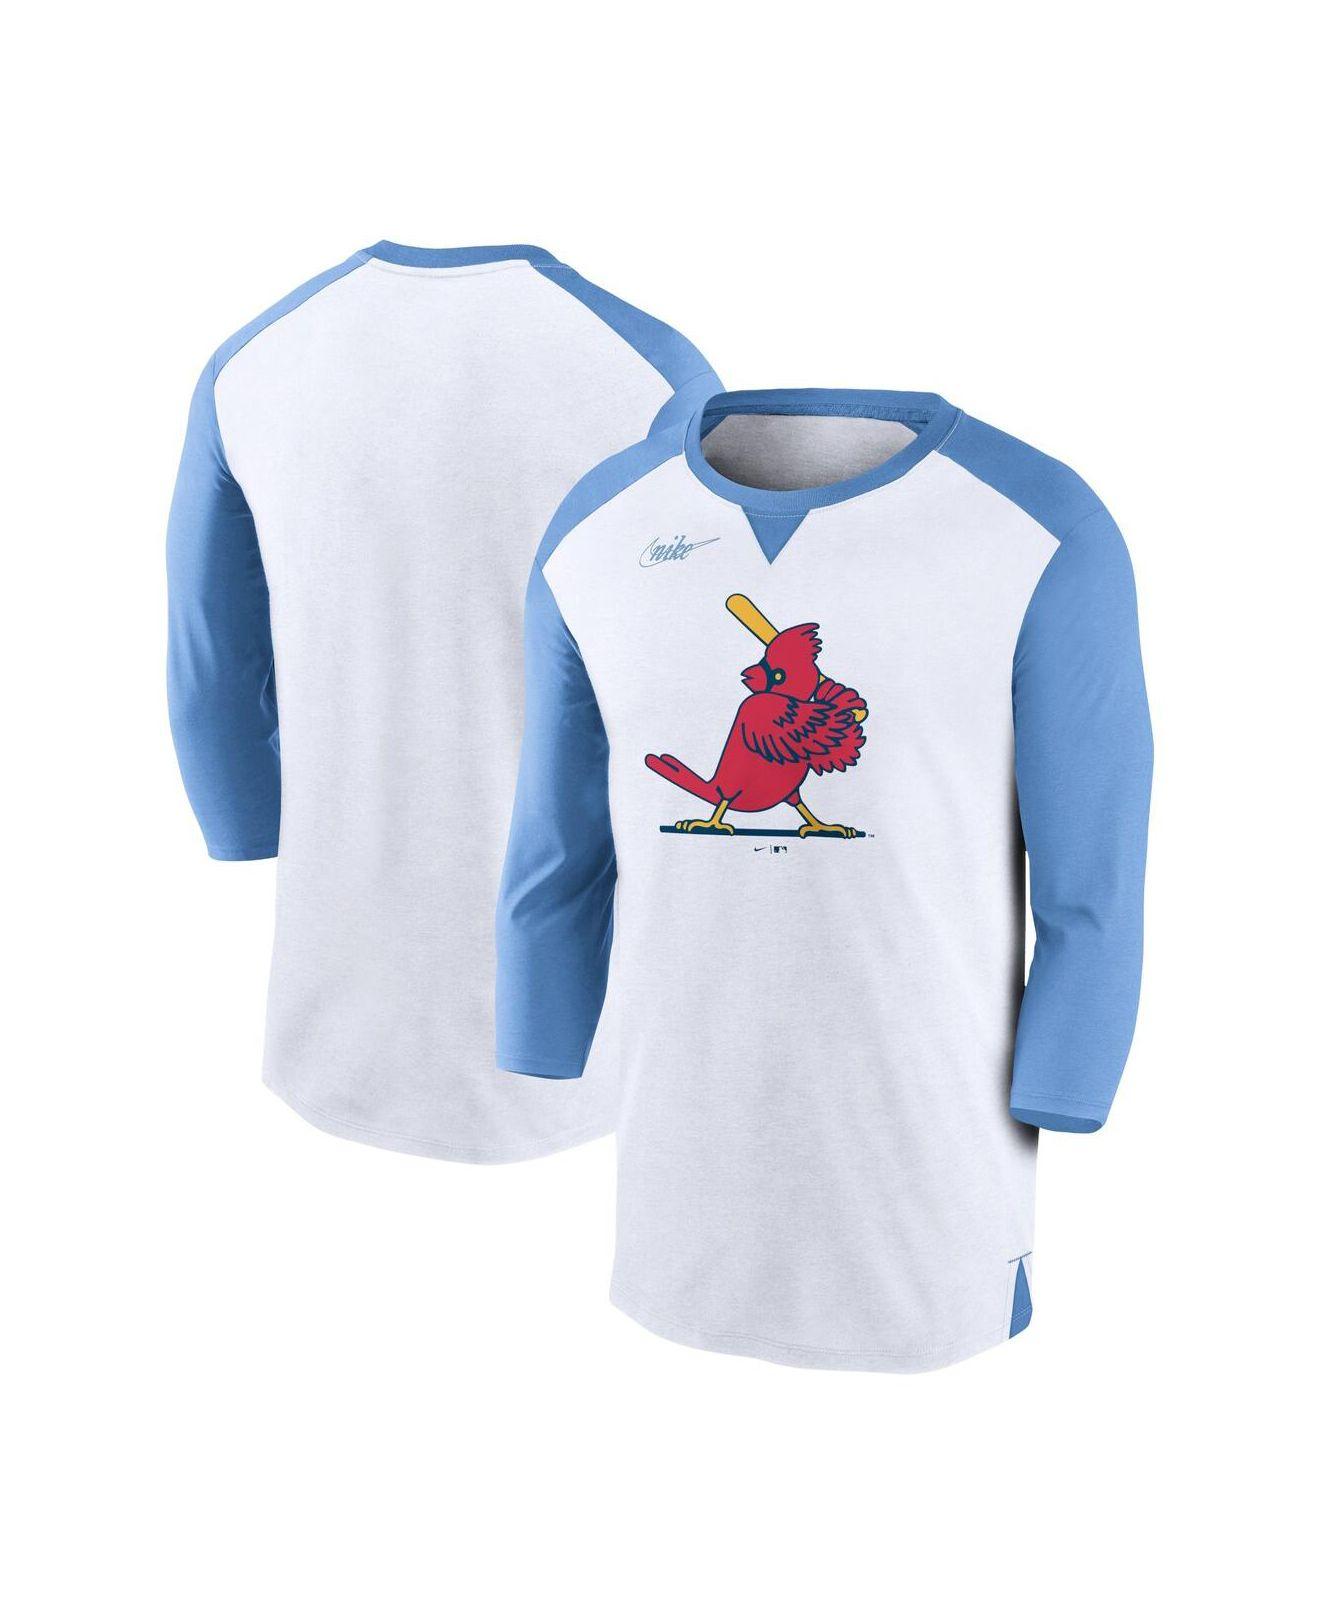 blue st louis cardinals shirt